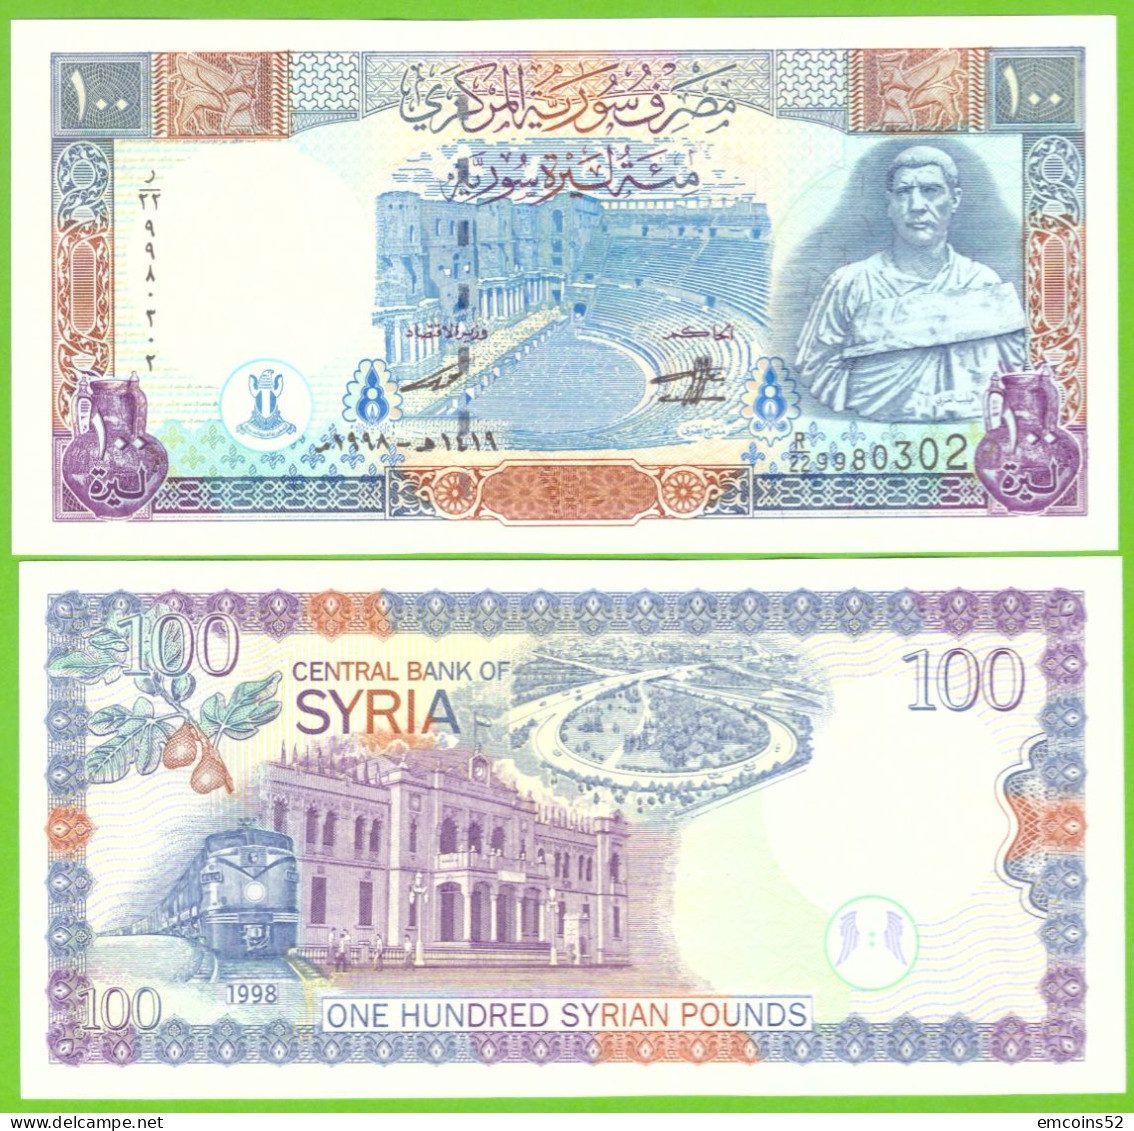 SYRIA 100 POUNDS 1998 P-108 UNC - Siria